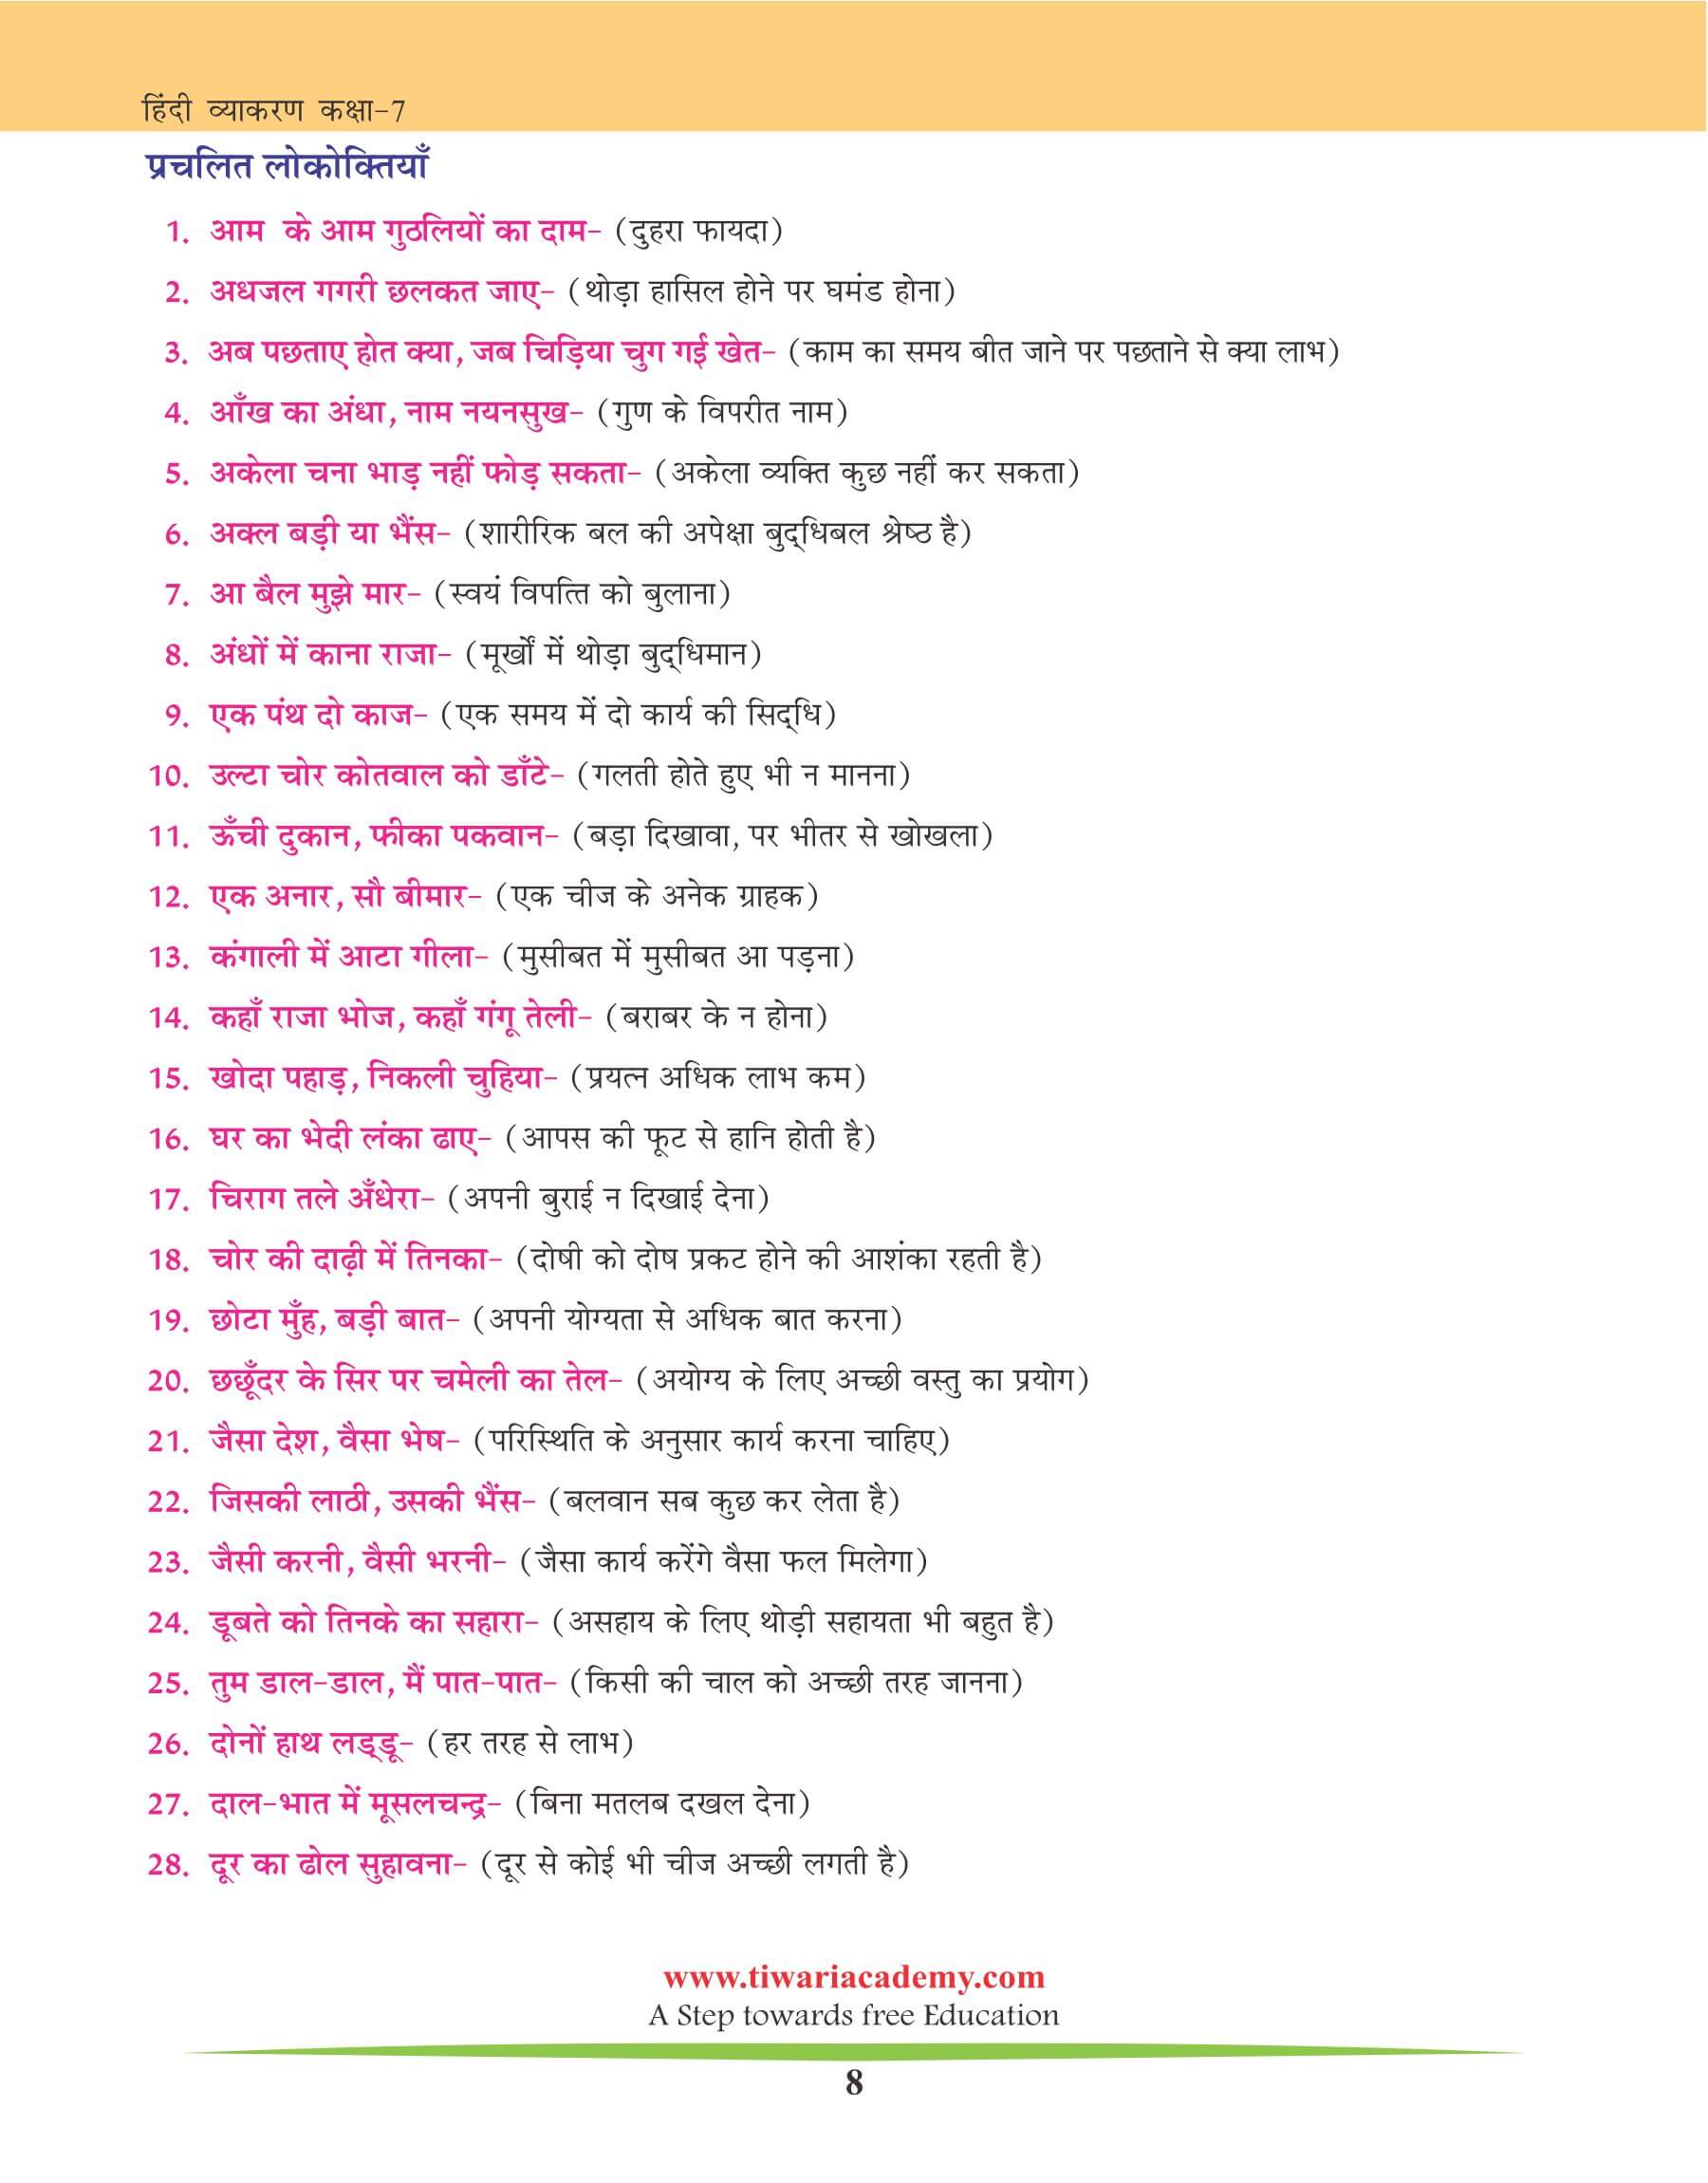 कक्षा 7 हिंदी व्याकरण मुहावरे के उदाहरण